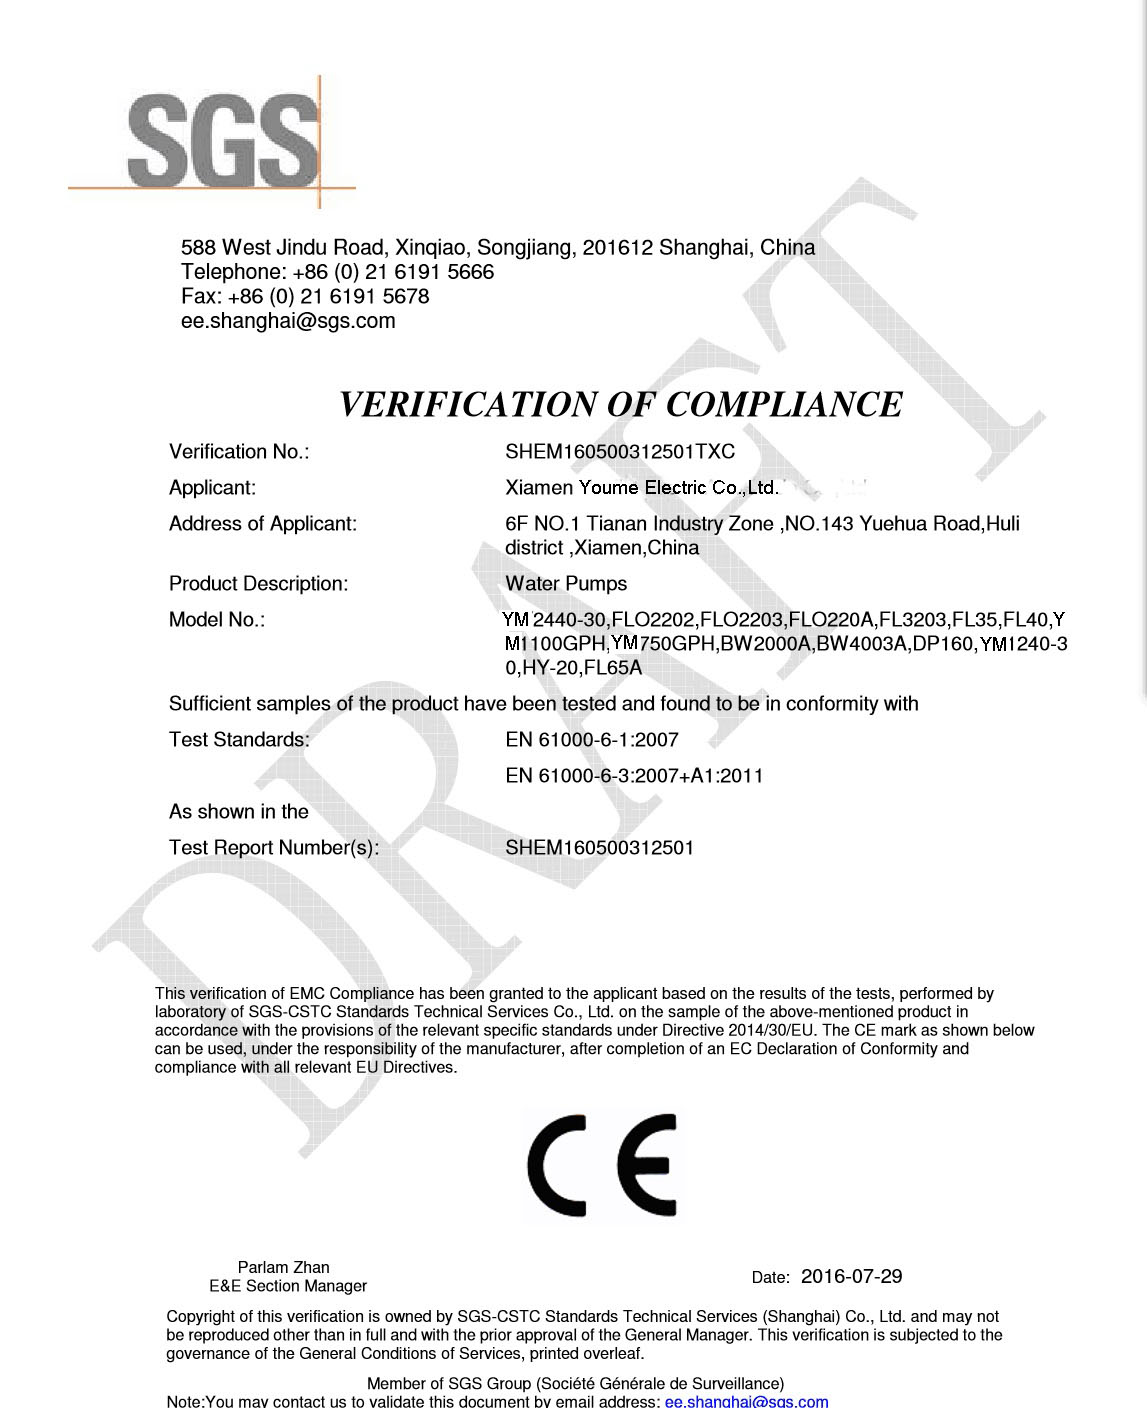 Dapatkan sertifikat CE / RoHs oleh SGS